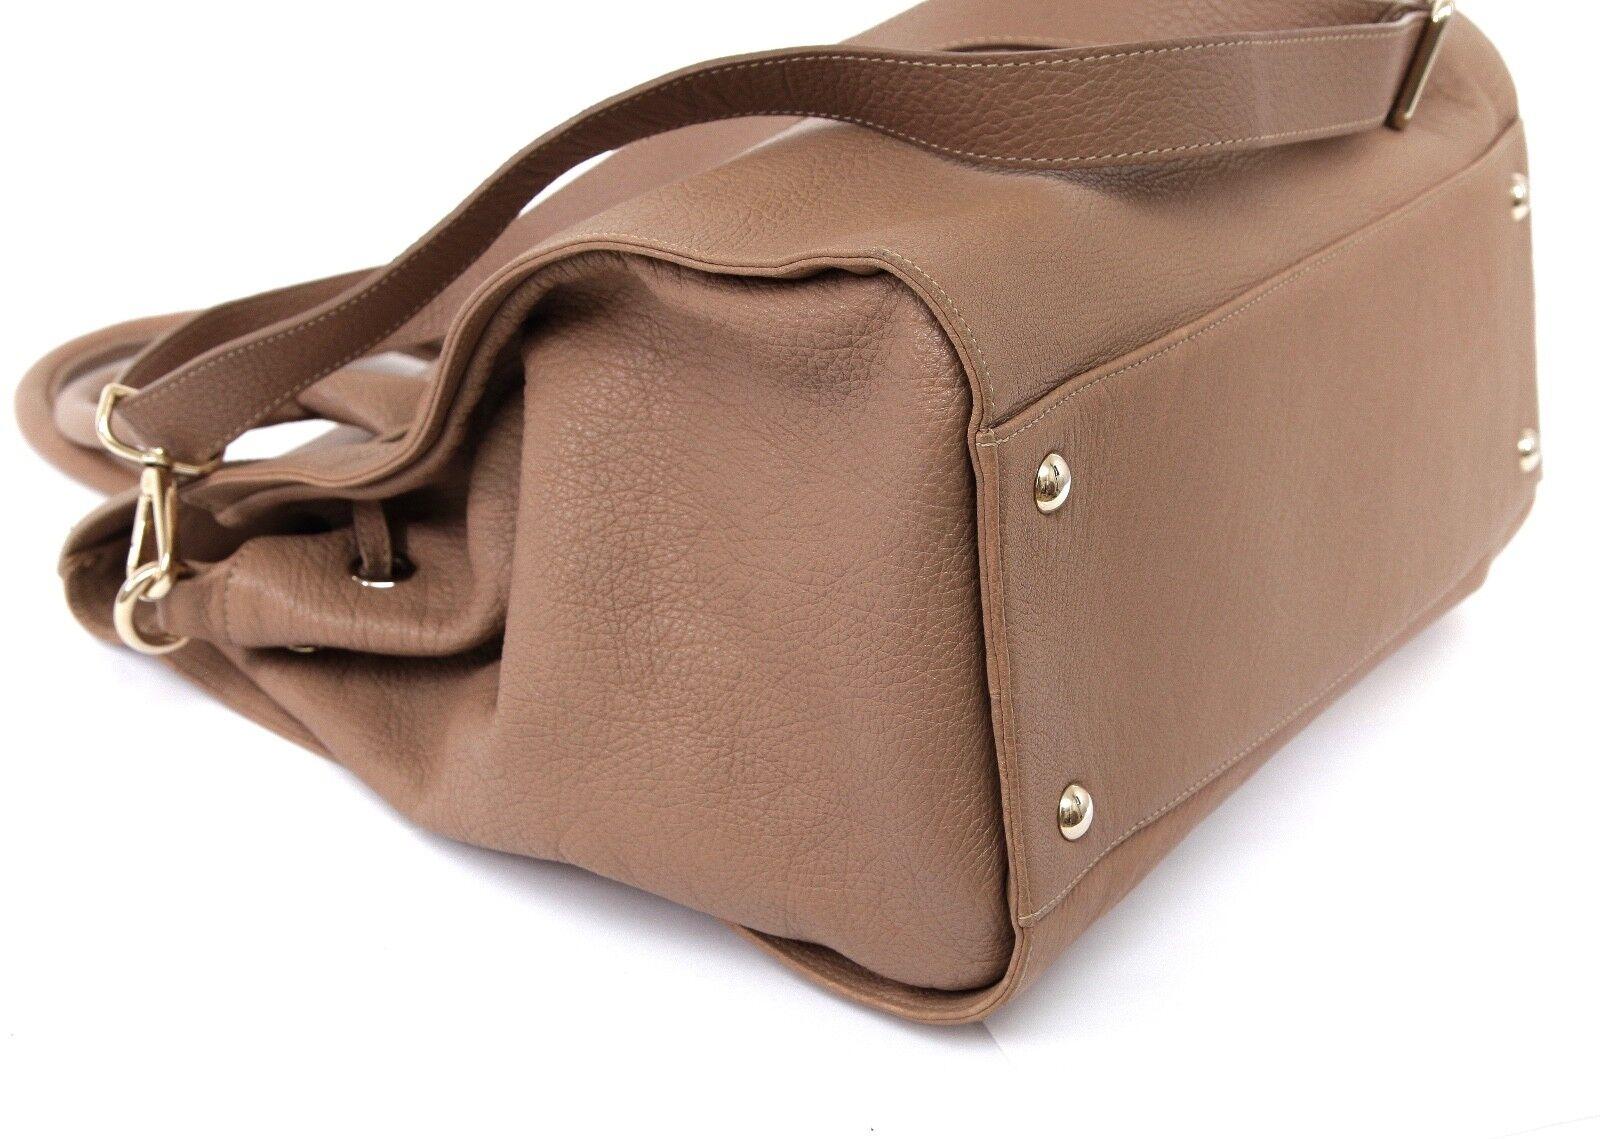 Women's JIMMY CHOO Bag Tan Leather Large ROSABEL Satchel Tote Shoulder Strap Gold HW For Sale